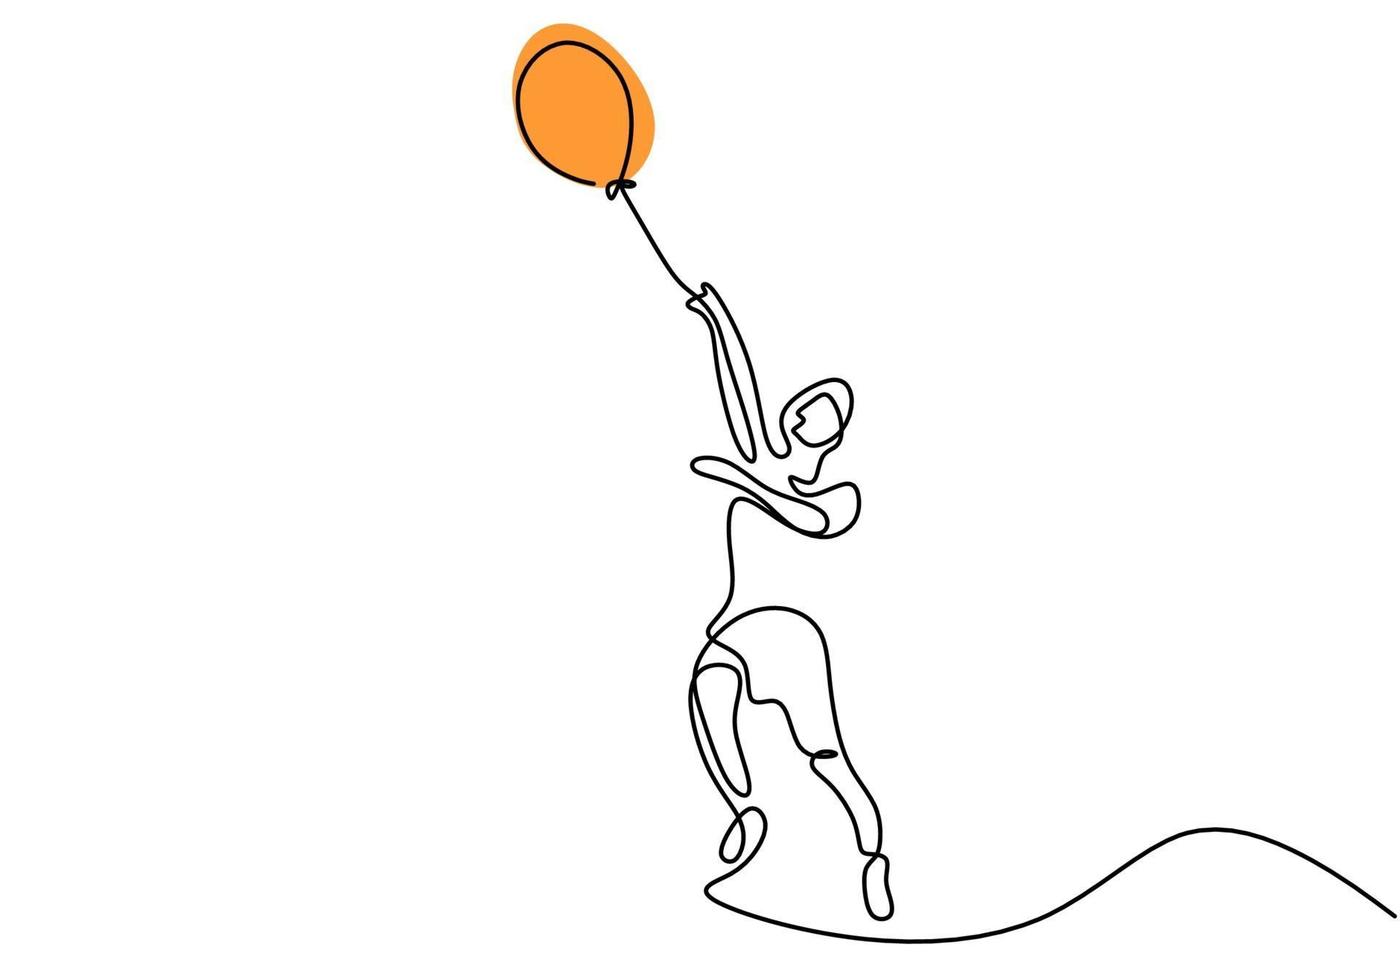 eine einzelne Strichzeichnung eines niedlichen Jungen, der einen Ballon hält. glückliches kleines Kind, das Luftballon im Spielplatz spielt, während gezeichnete Strichgrafiken der Sprunghand auf weißem Hintergrund Vektorillustration vektor